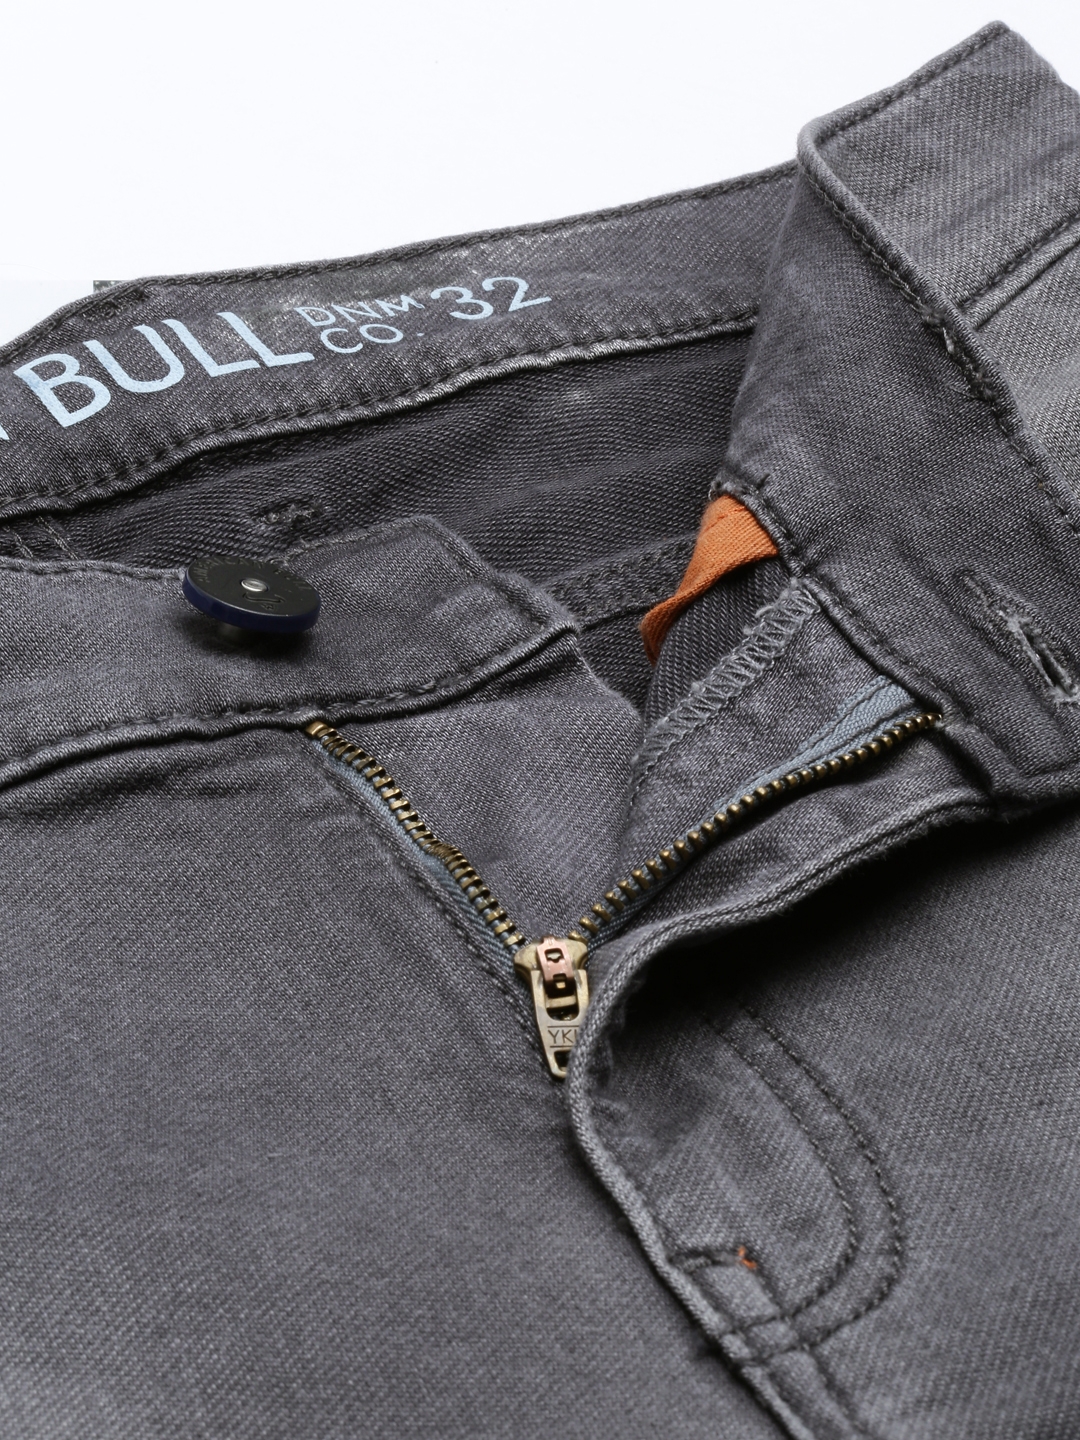 American Bull Mens Denim Jeans